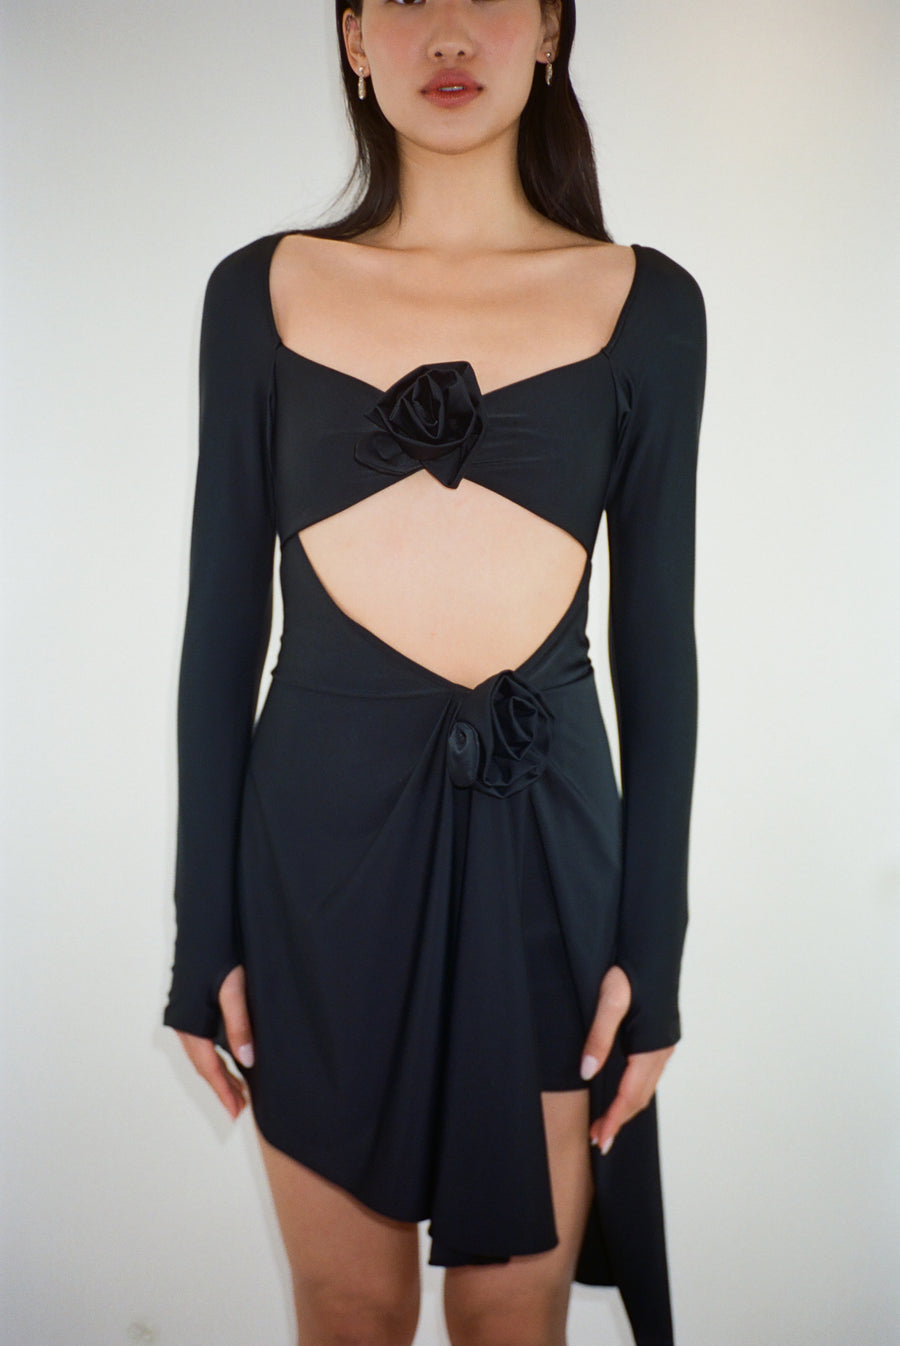 Asymmetric mini dress in black with rosette details on model